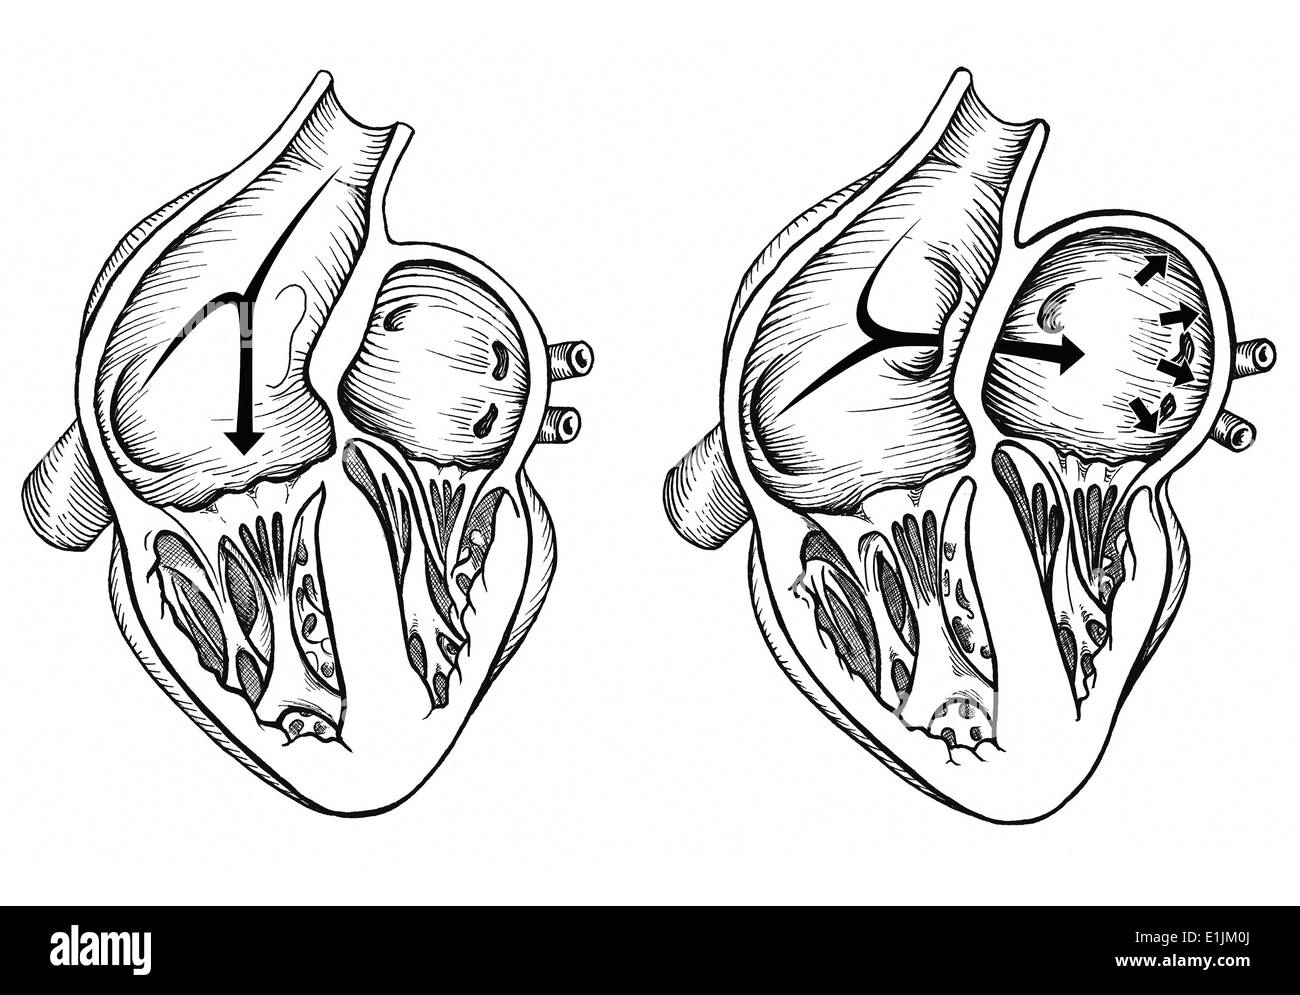 Vergleich der normalen Herz gegen Herz mit einem patent Foramen Ovale. Stockfoto